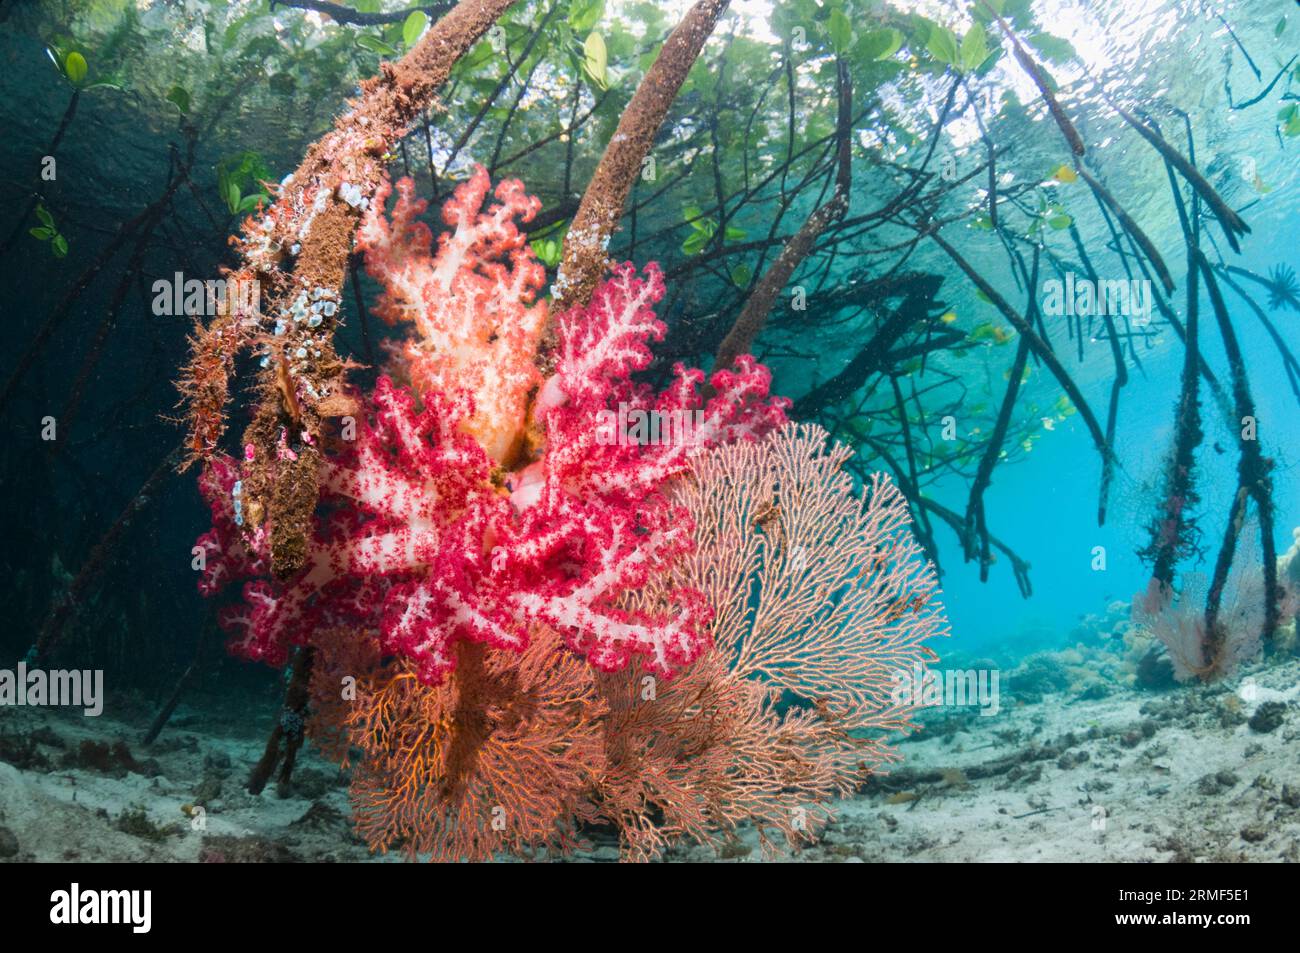 Corallo morbido che cresce sulle radici di mangrovie (Rhizophora sp.). Raja Ampat, Indonesia. Foto Stock